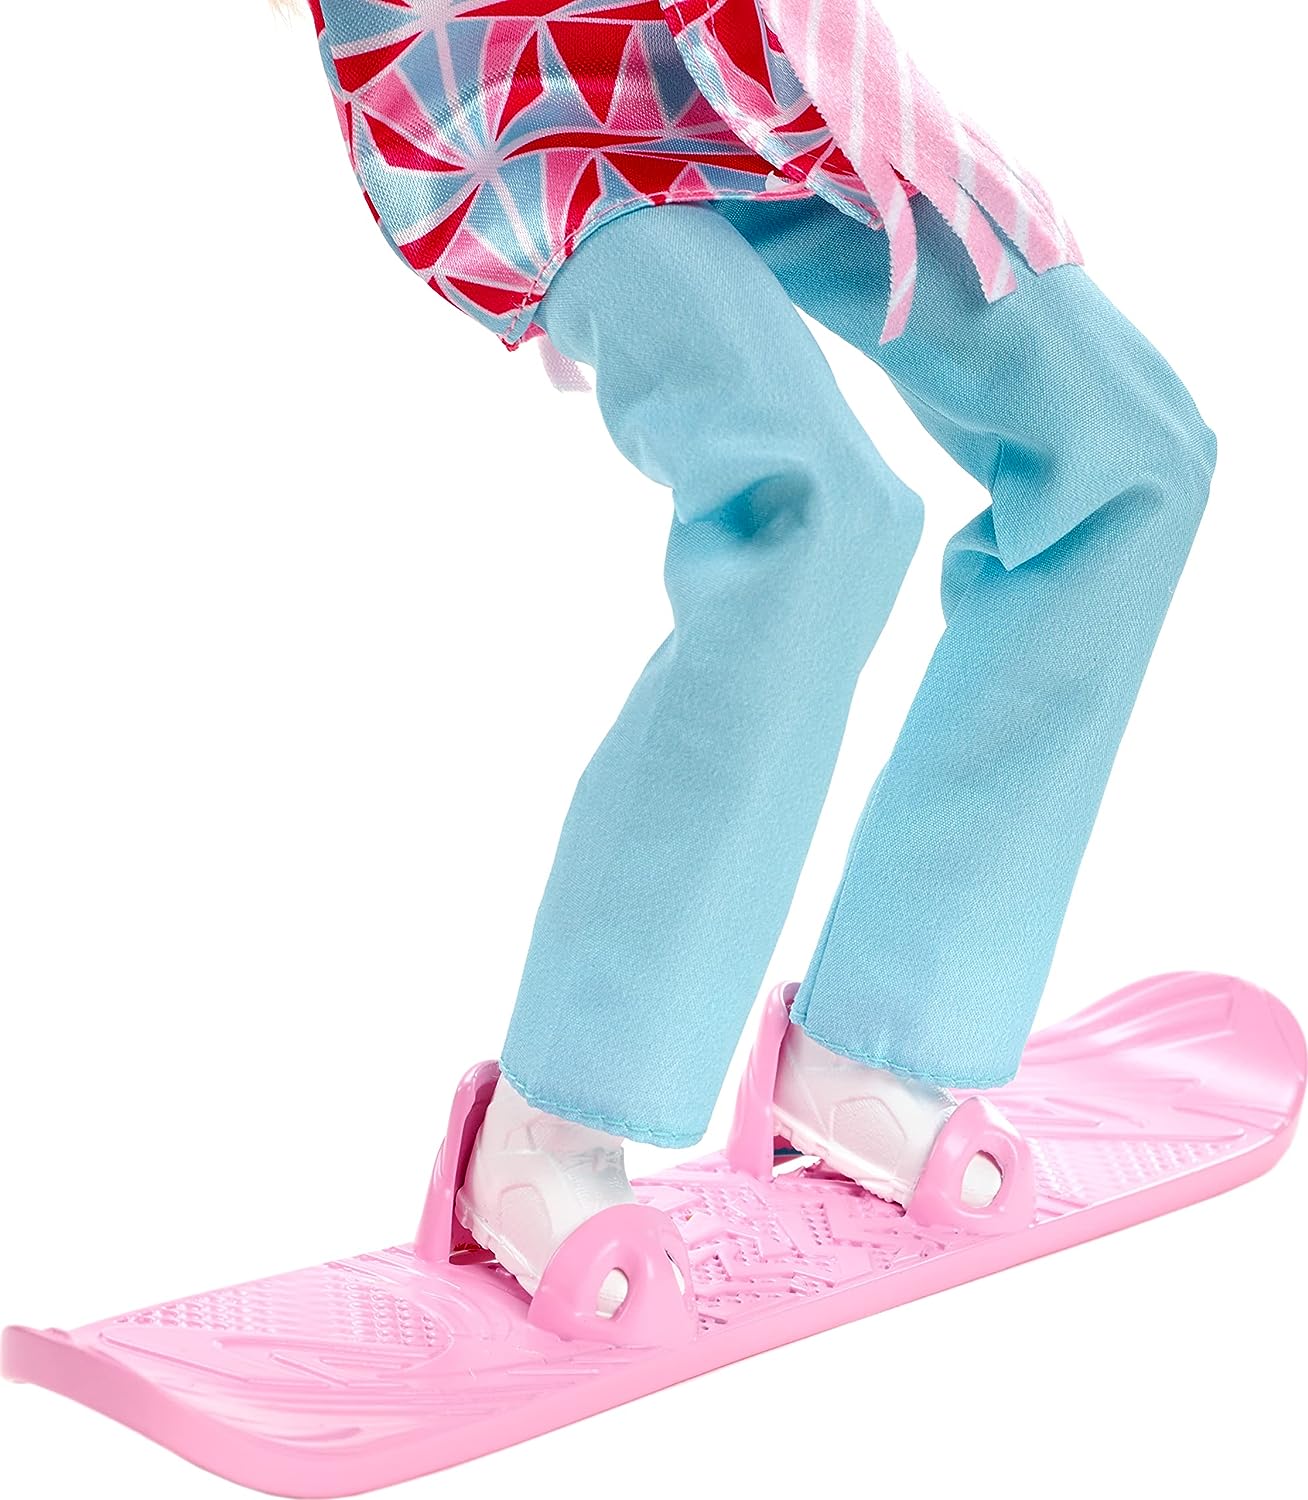 Barbie - Snowboarder Fashion Doll